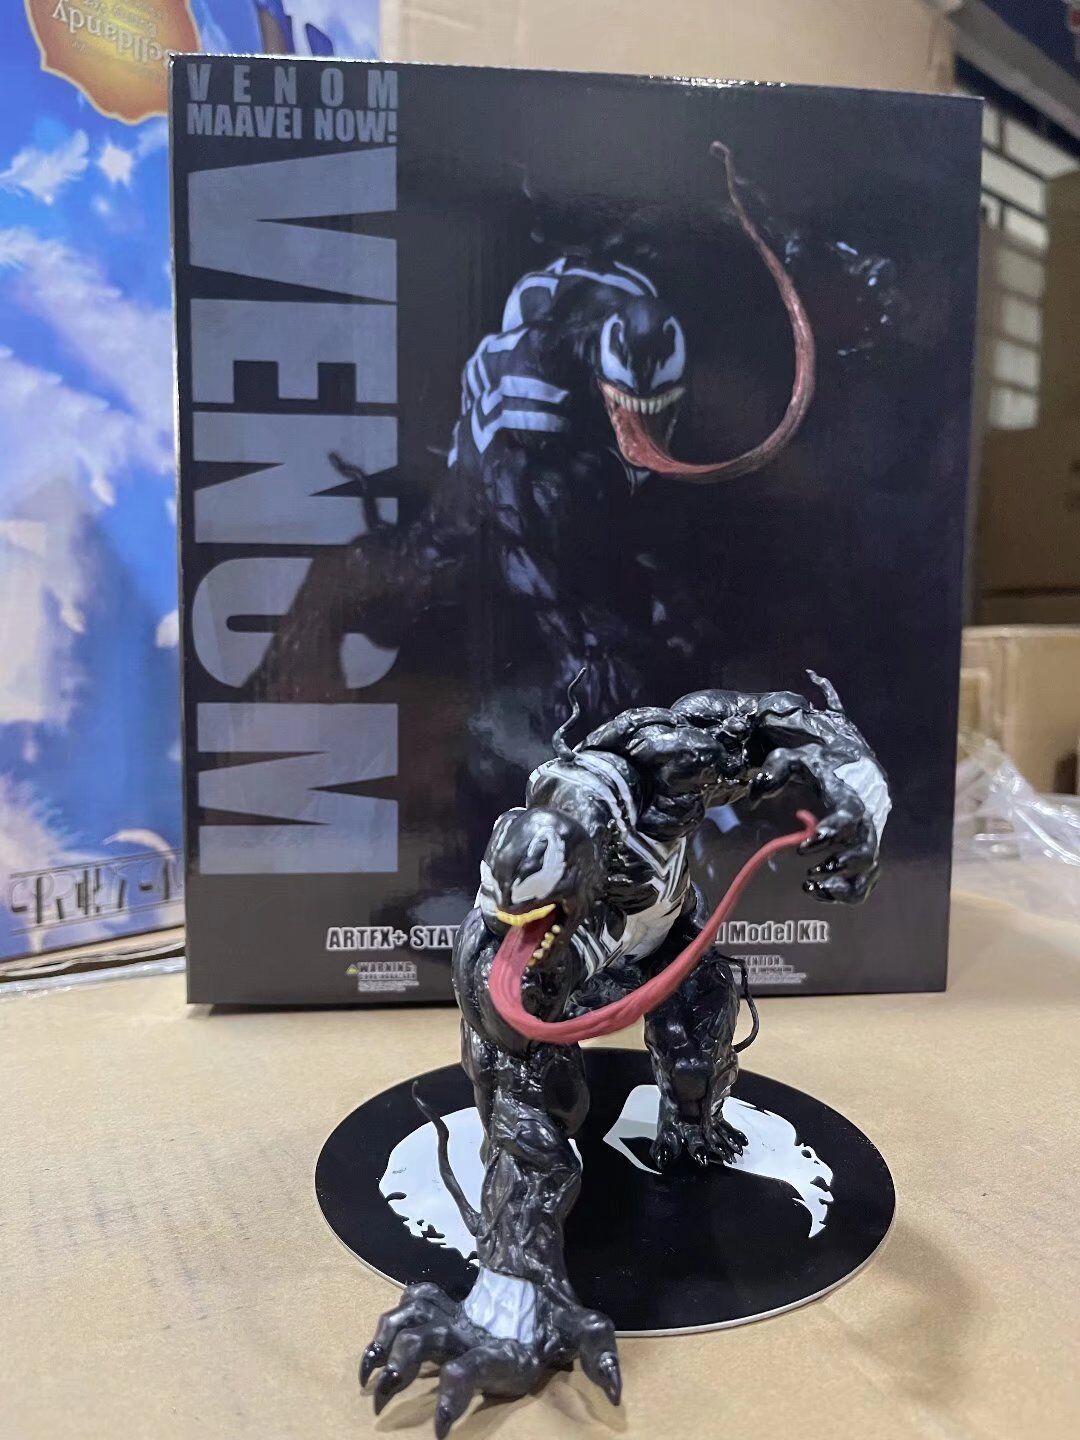 Kotobukiya 1/10 Artfx Spider-Man Venom Massacre Movie Hand-Made Decoration Model